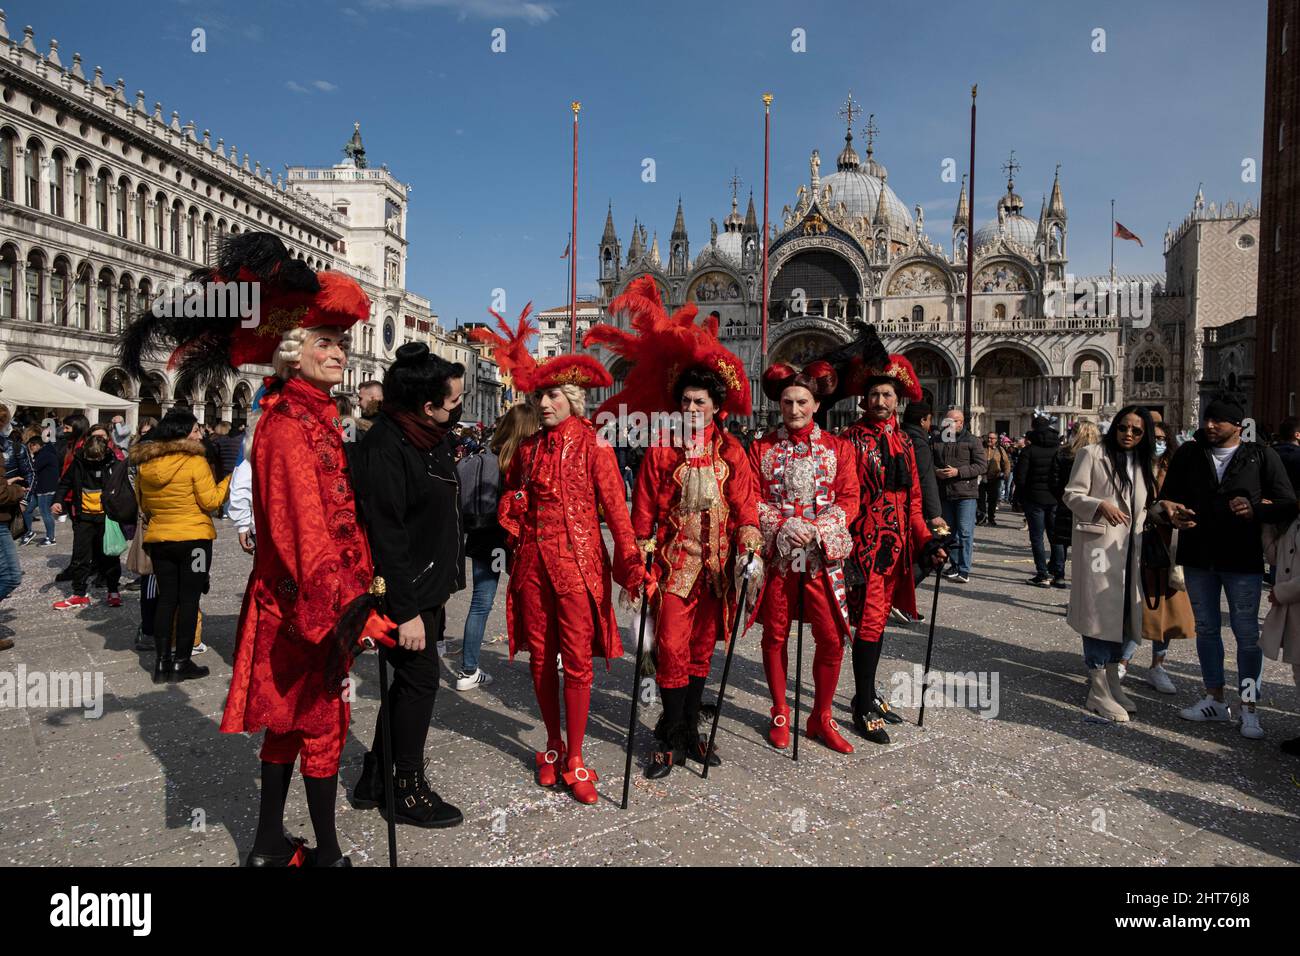 Les fêtards masqués se réunissent pour célébrer le carnaval de Venise à Venise, Italie, le 27 février 2022. Banque D'Images